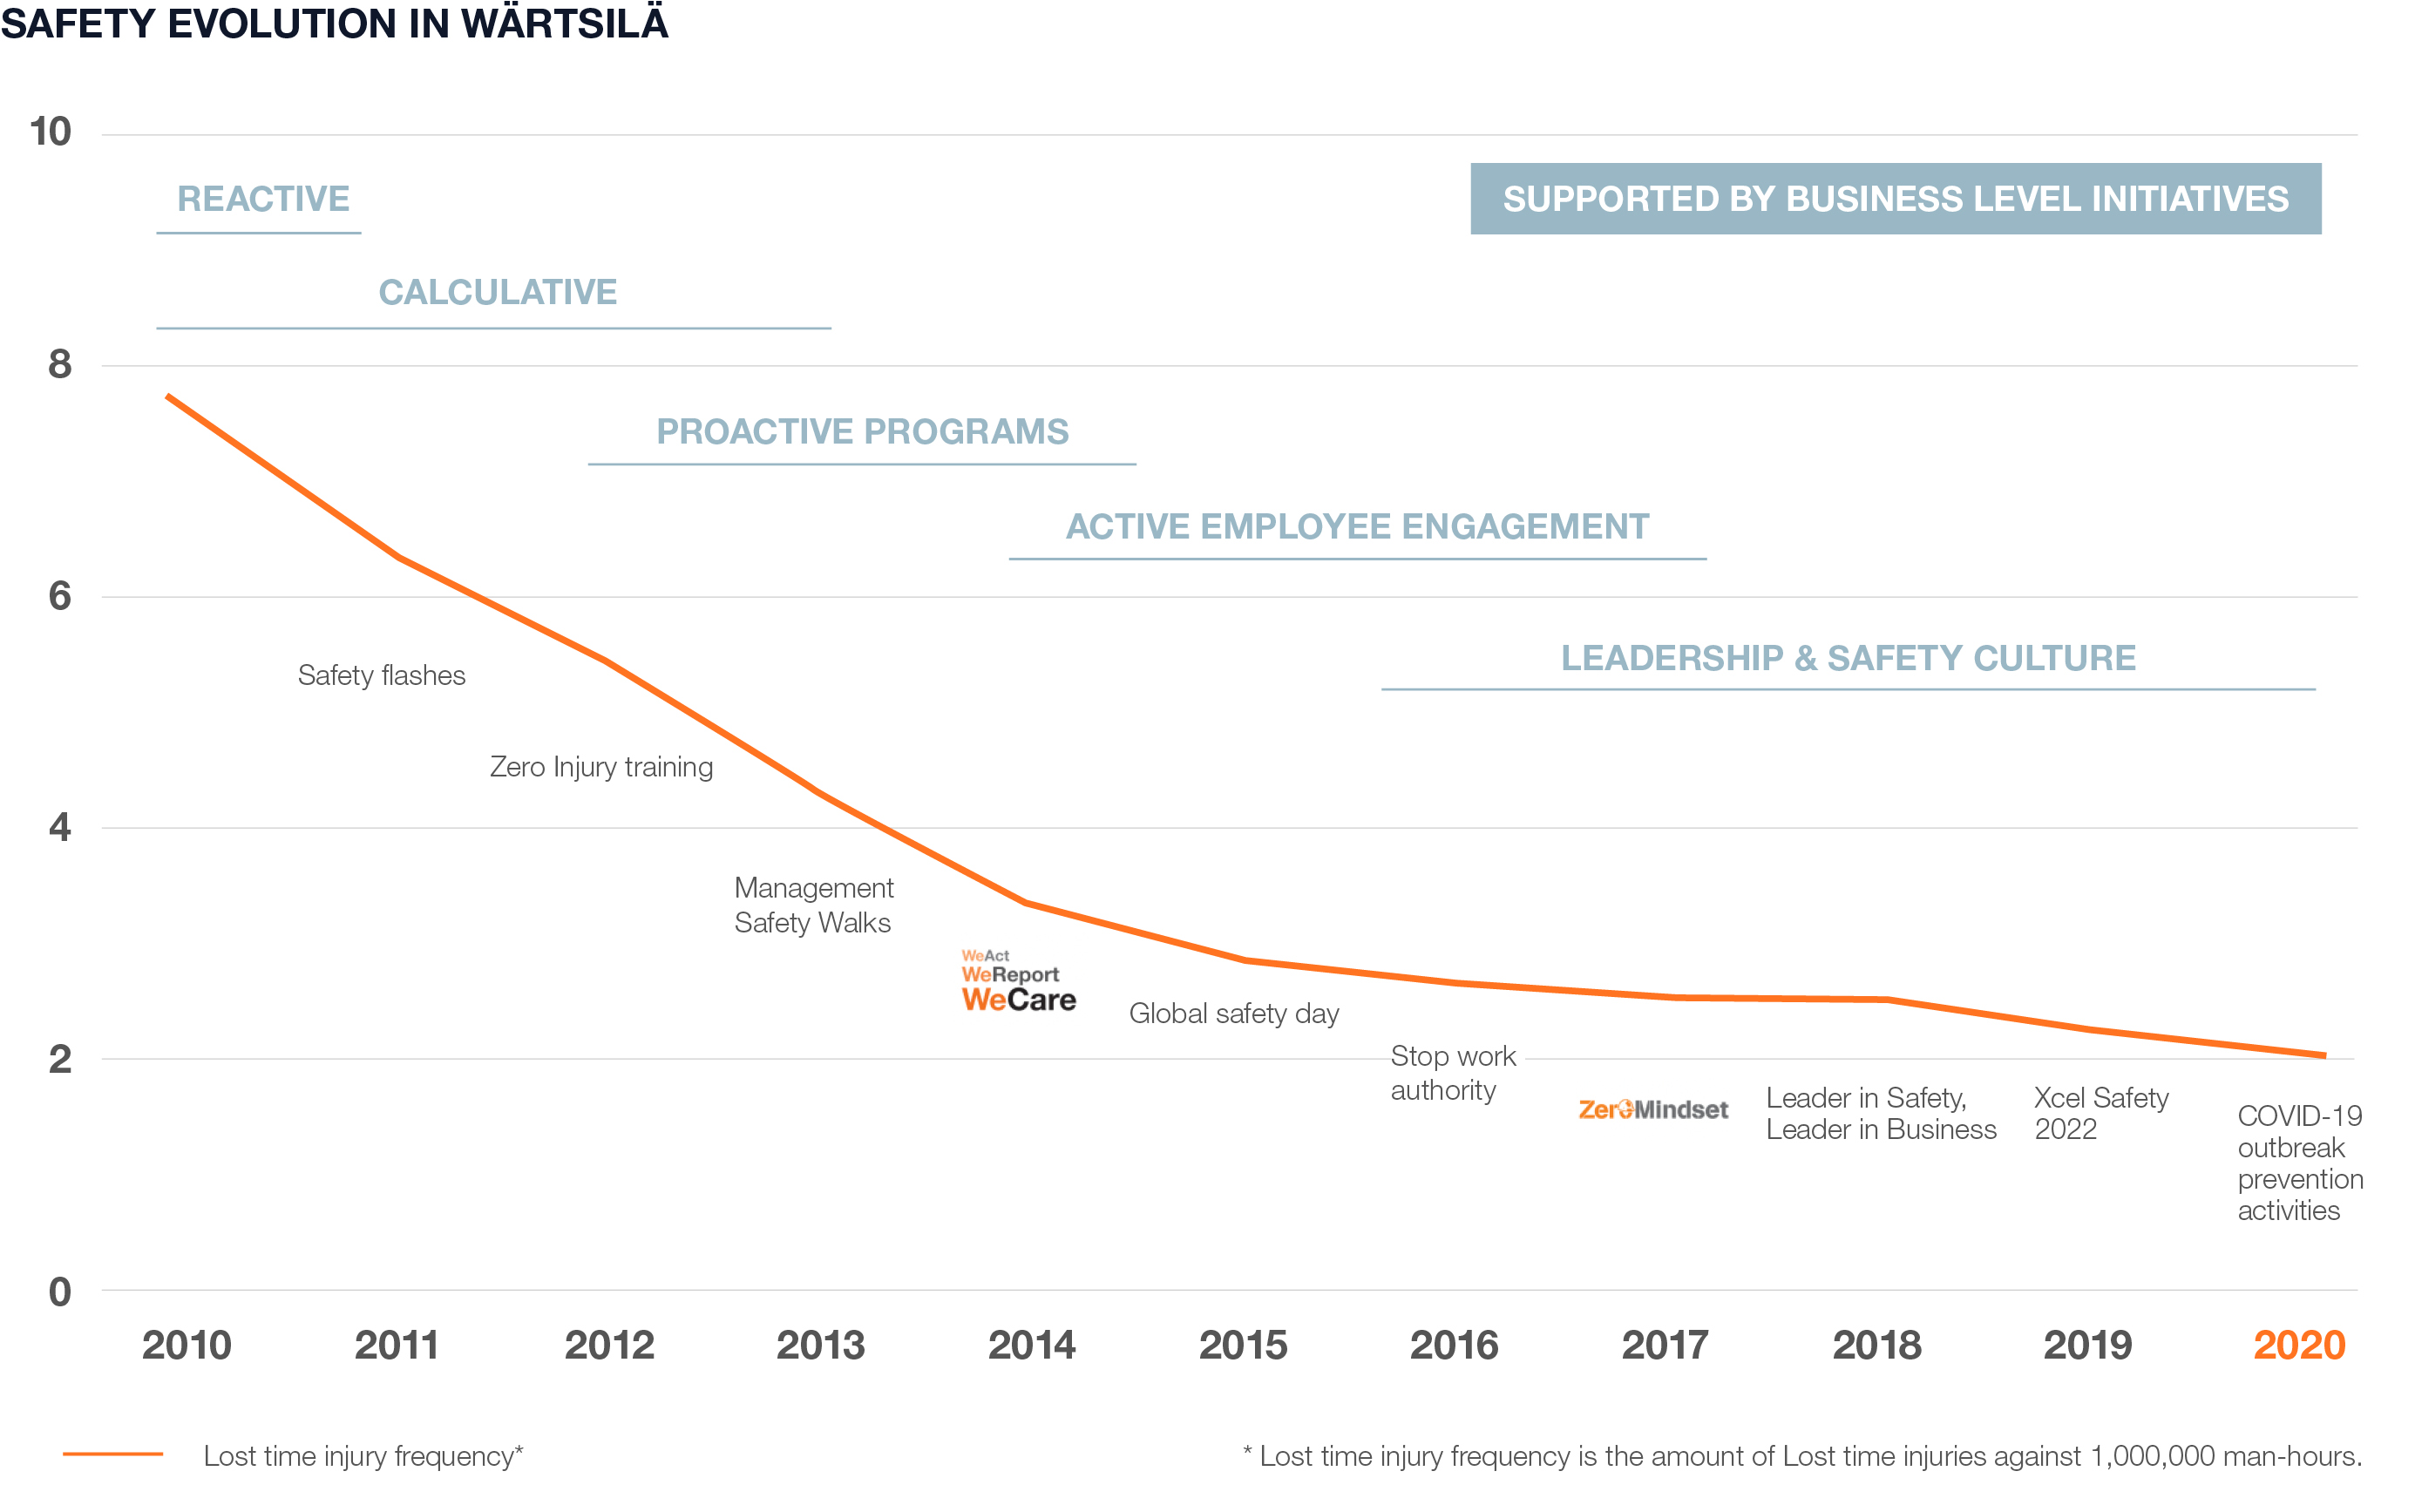 Wärtsilä sustainability charts 2020 - Safety evolution